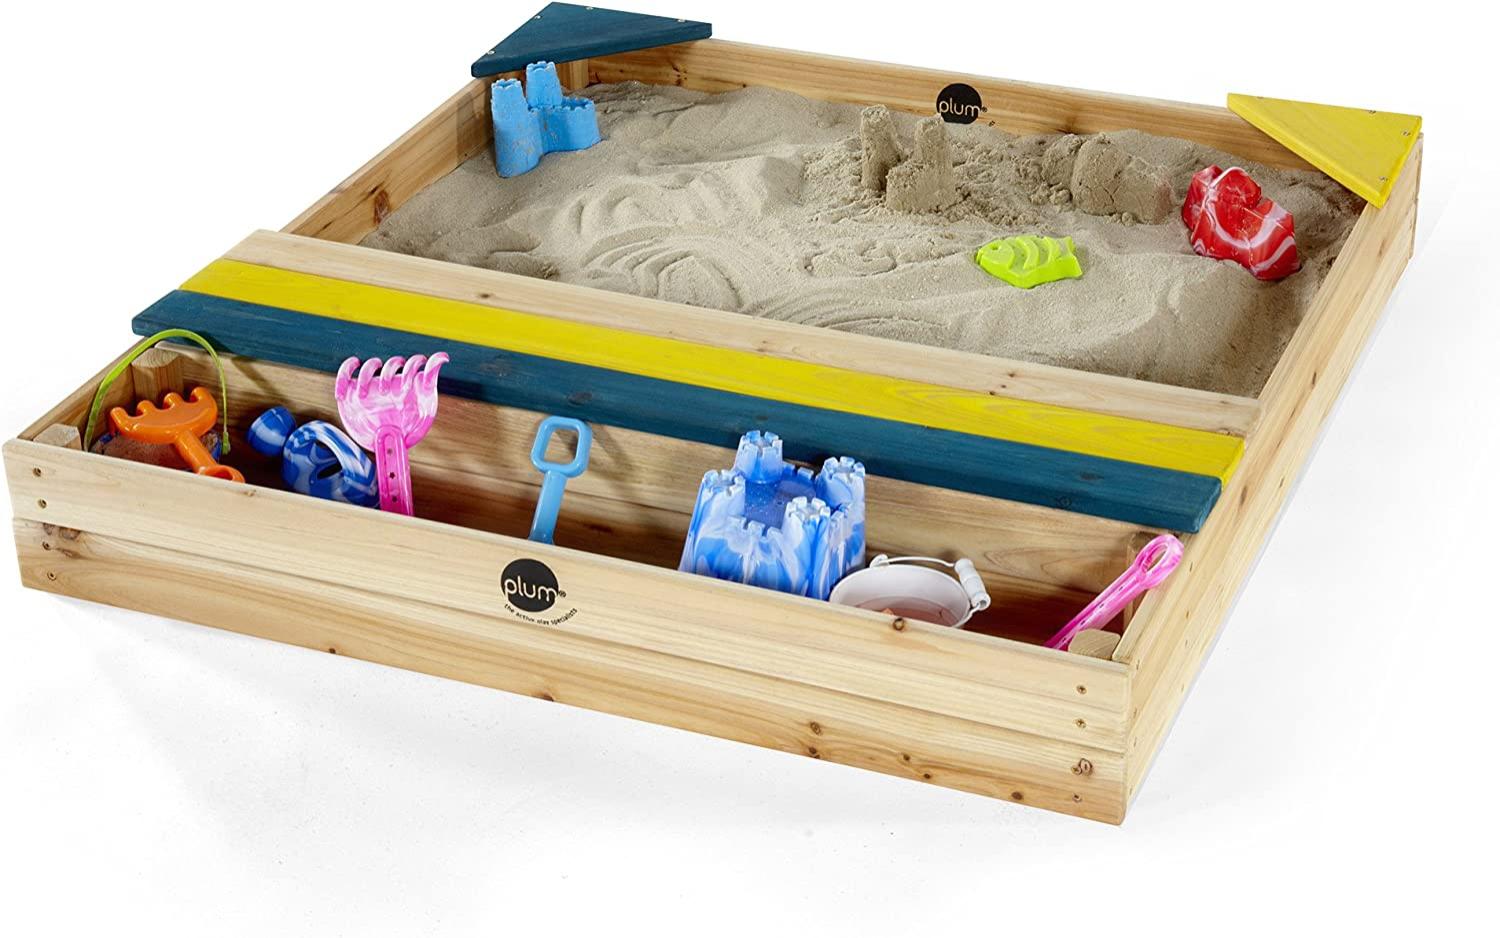 Plum 25069 Kinder Sand Spielzeug Sandkasten mit Aufbewahrungsbox Bild 1